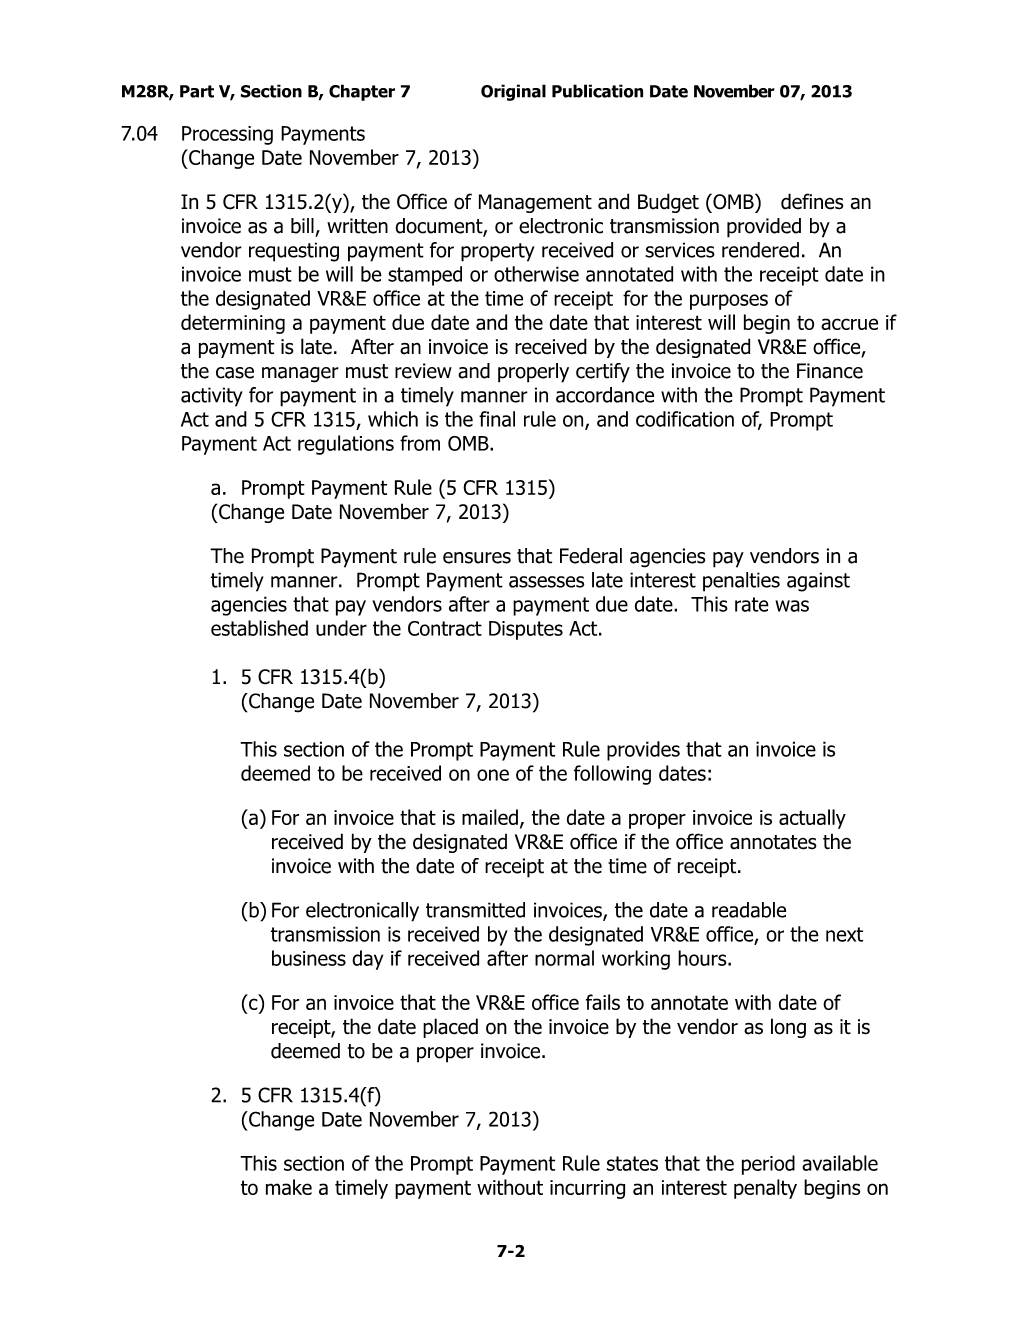 M28R, Part V, Section B, Chapter 7Original Publication Date November 07, 2013